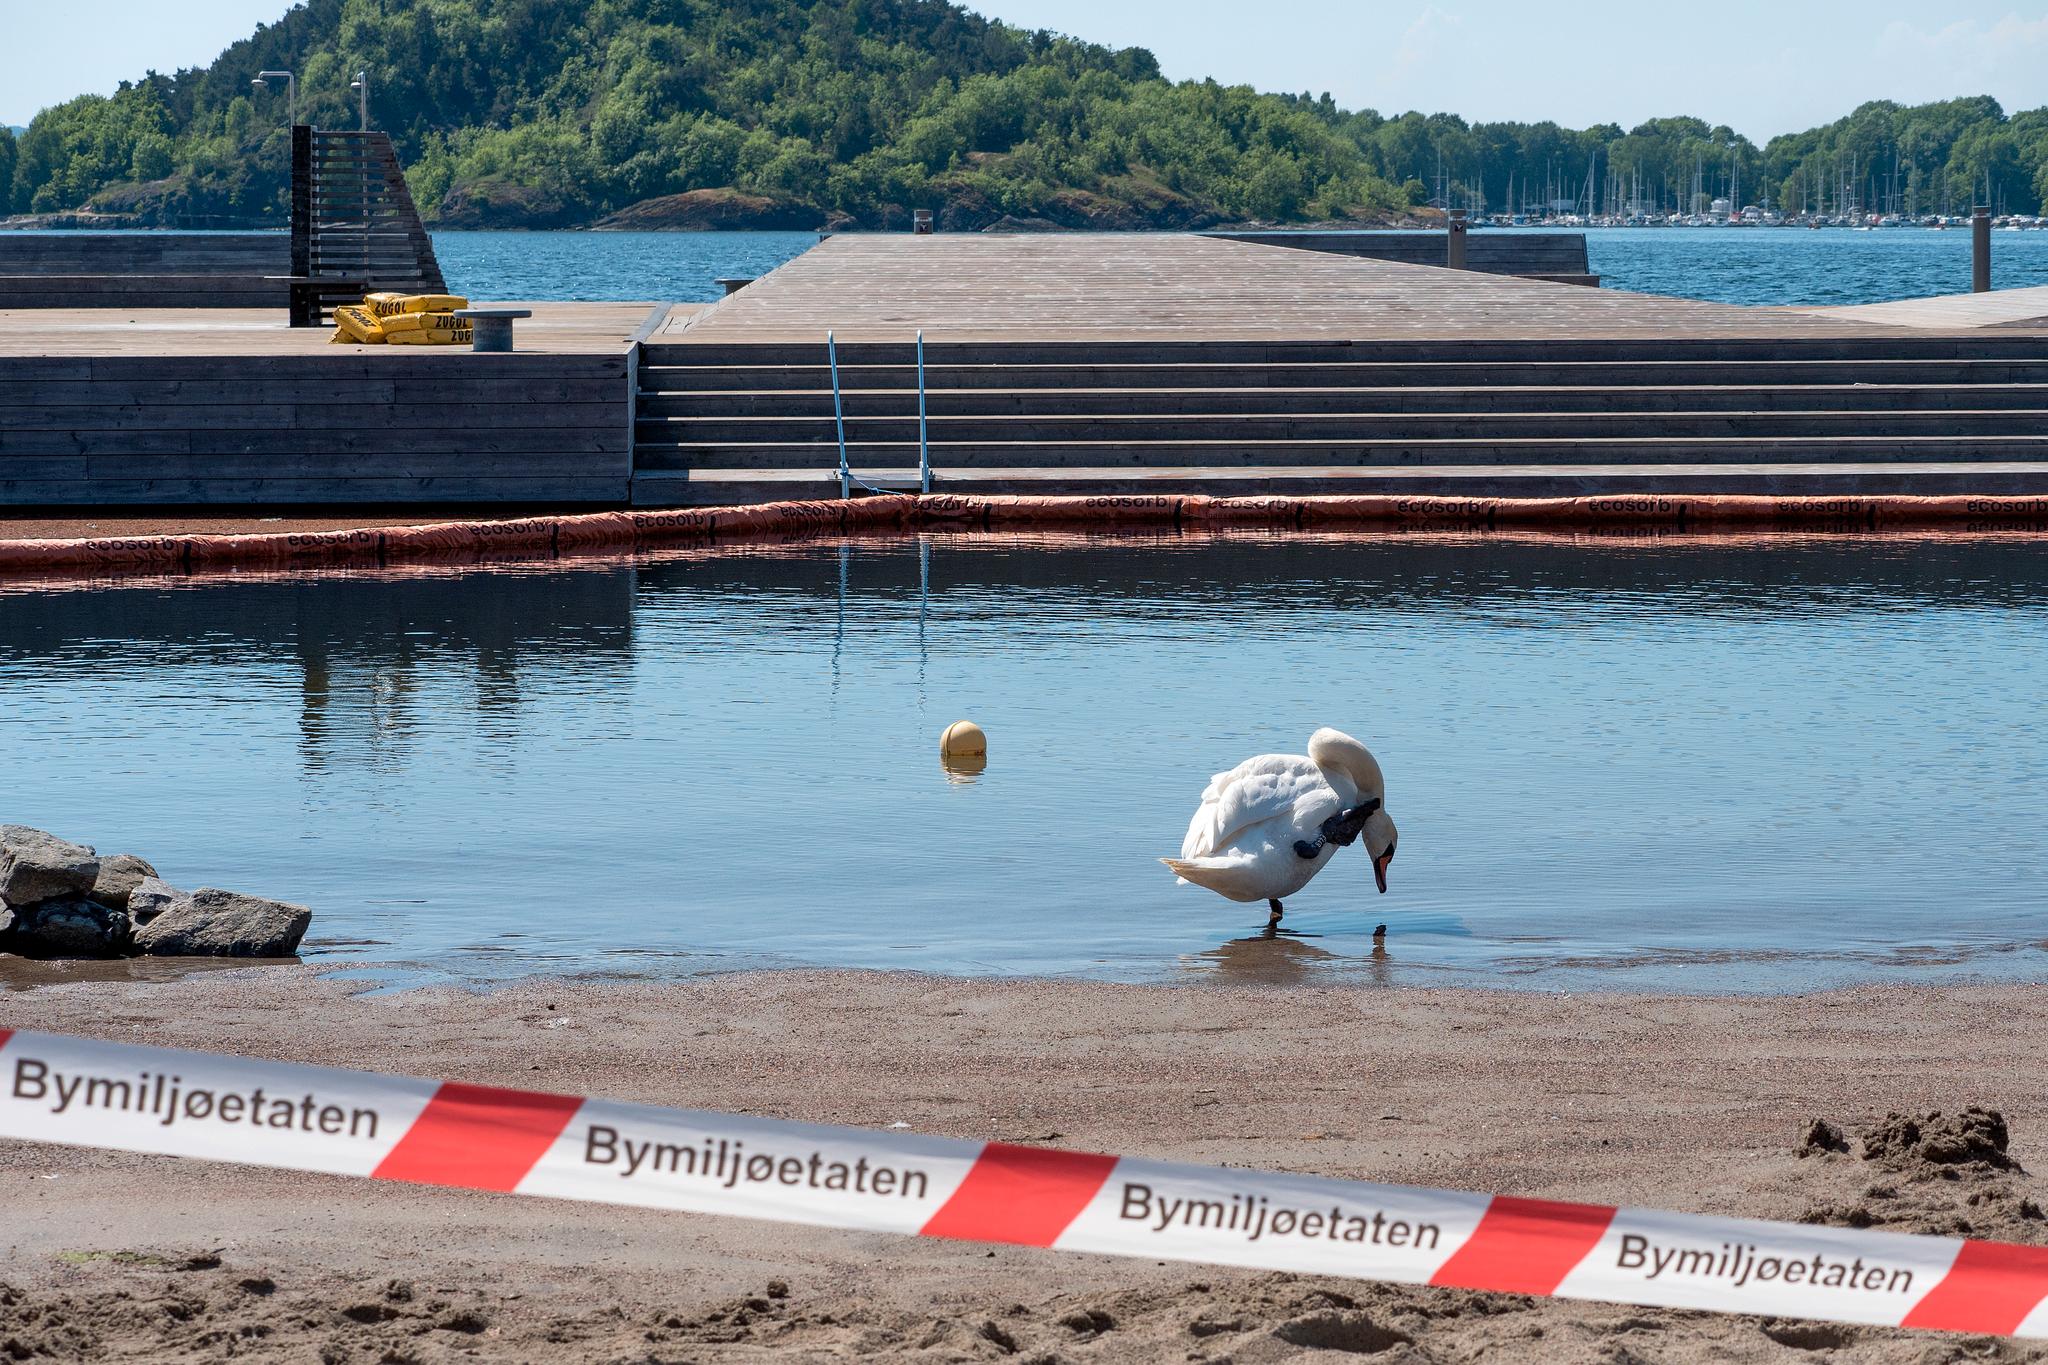 Gjerder og sperrebånd møter Oslo-beboere som hadde tenkt å nyte et forfriskende sjøbad på Sørenga i dag. 